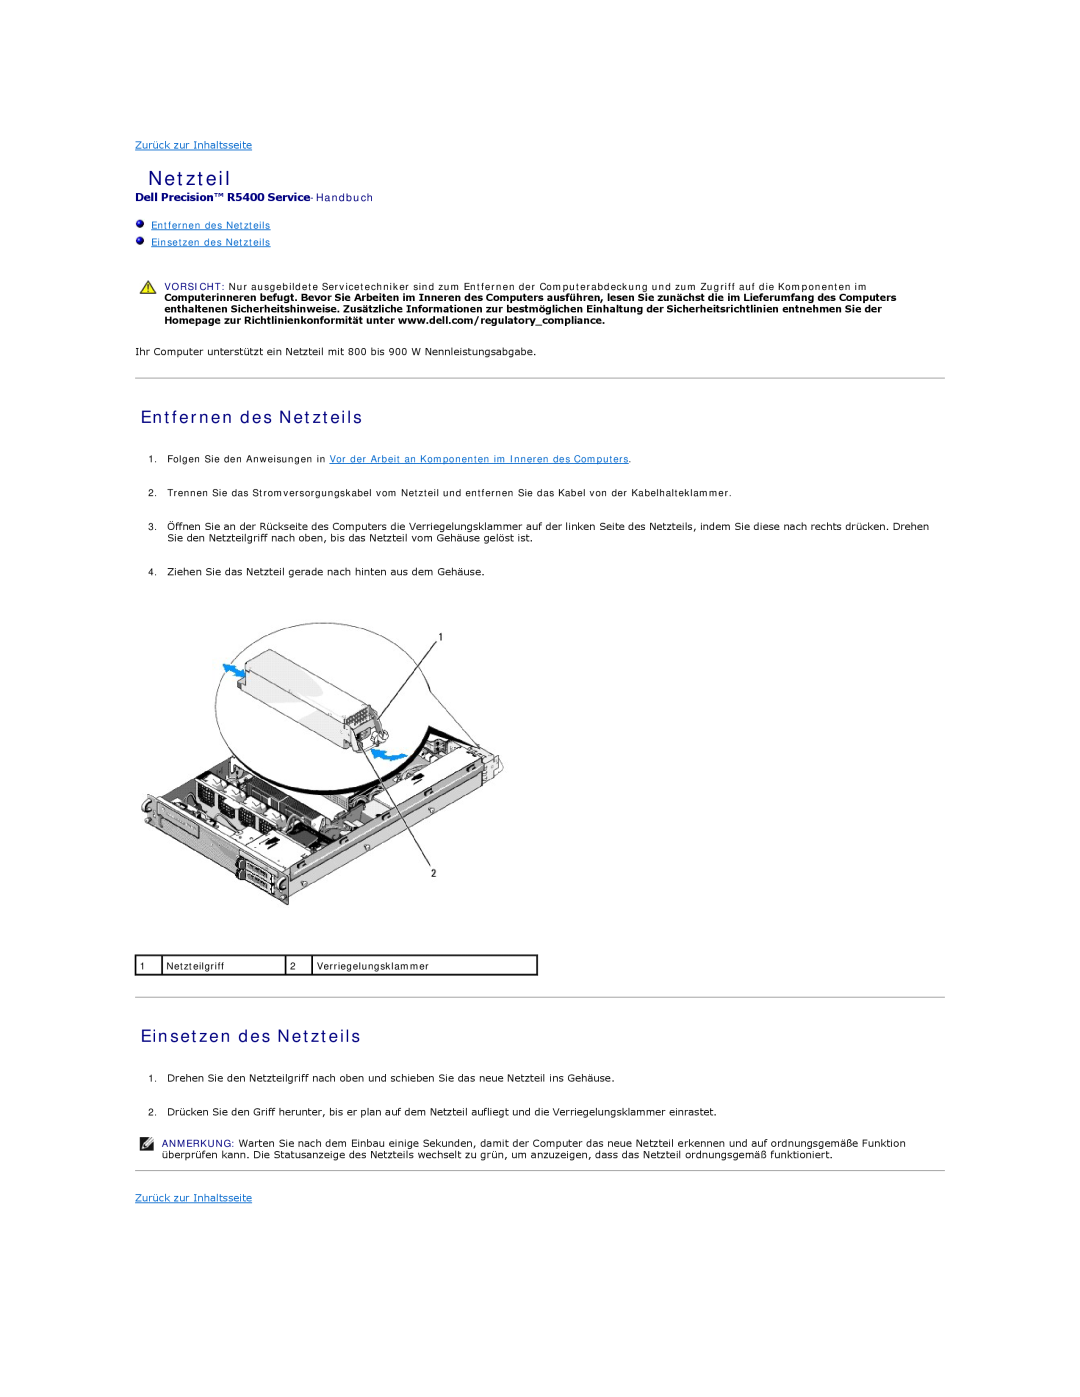 Dell manual Entfernen des Netzteils Einsetzen des Netzteils, Dell Precision R5400 Service-Handbuch 